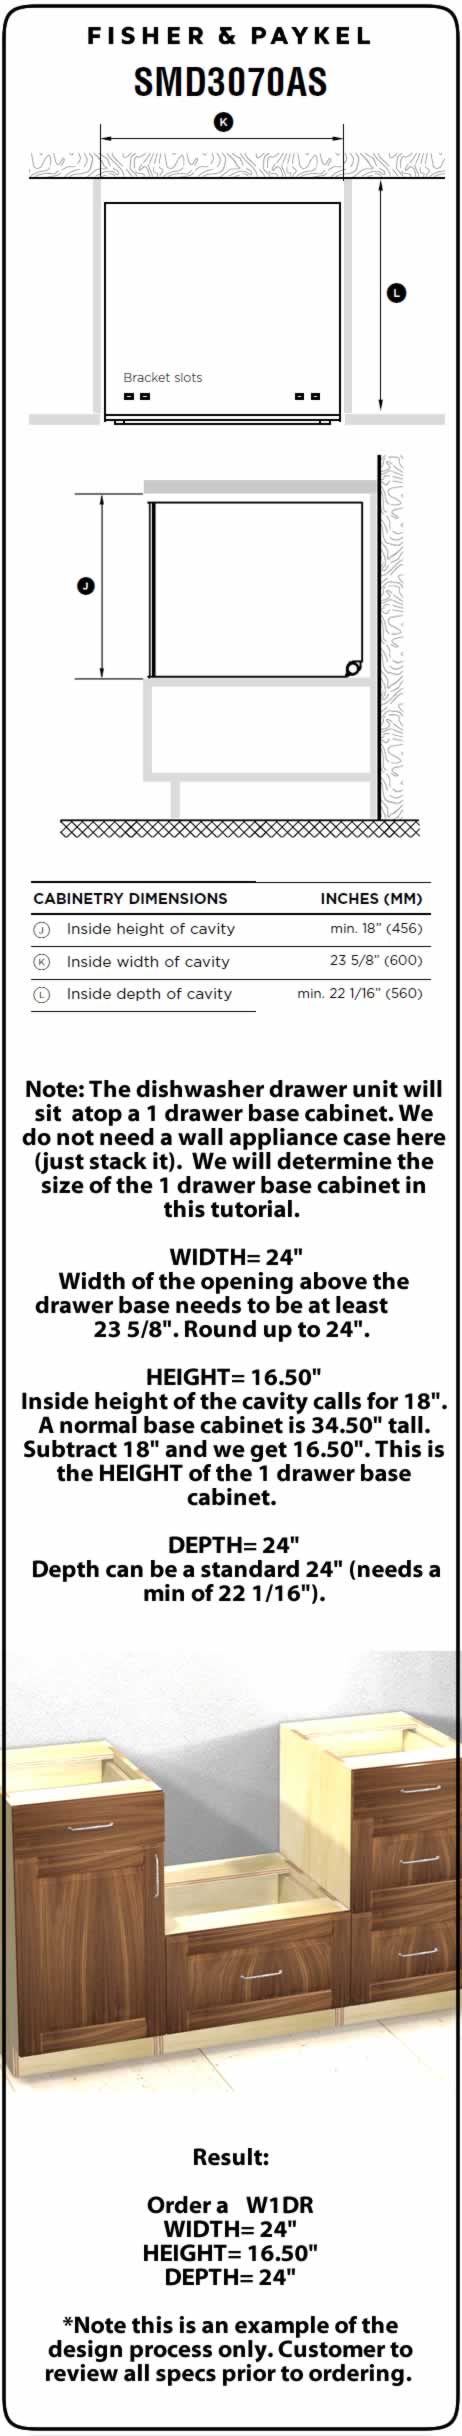 1 door base cabinet with heavy duty mixer lift